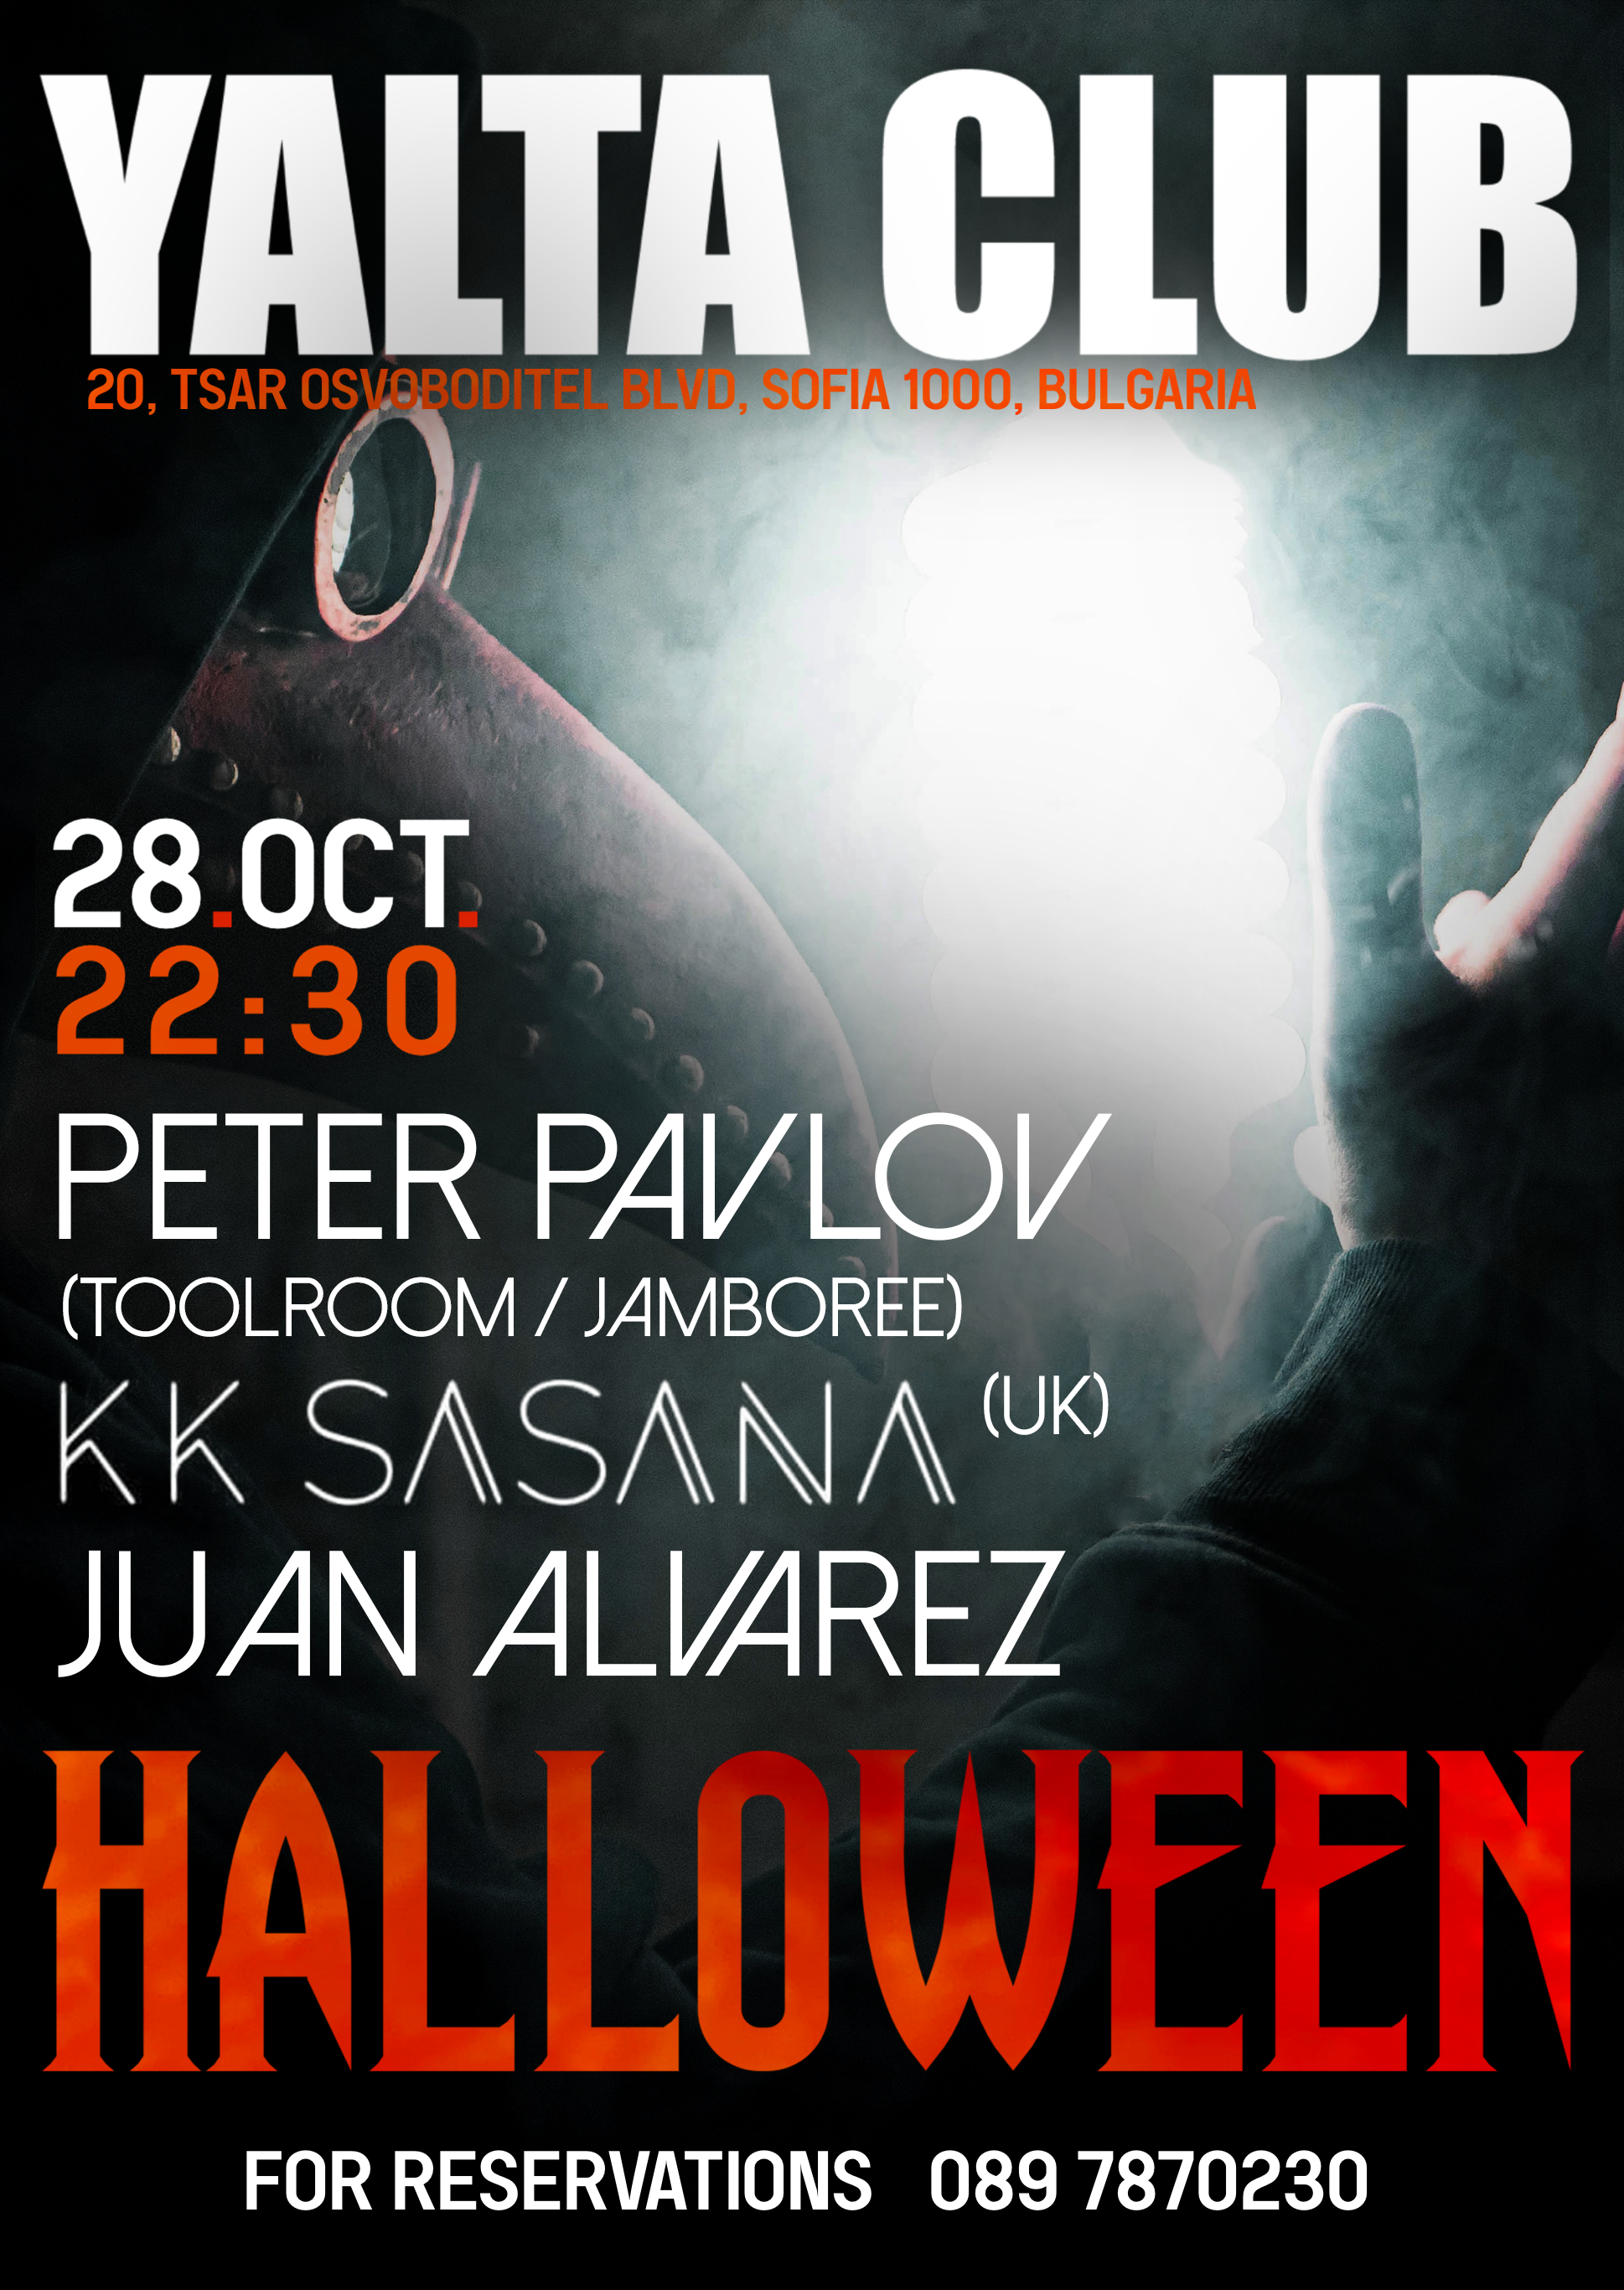 Halloween with KK Sasana (UK), Juan Alvarez, Peter Pavlov - フライヤー表